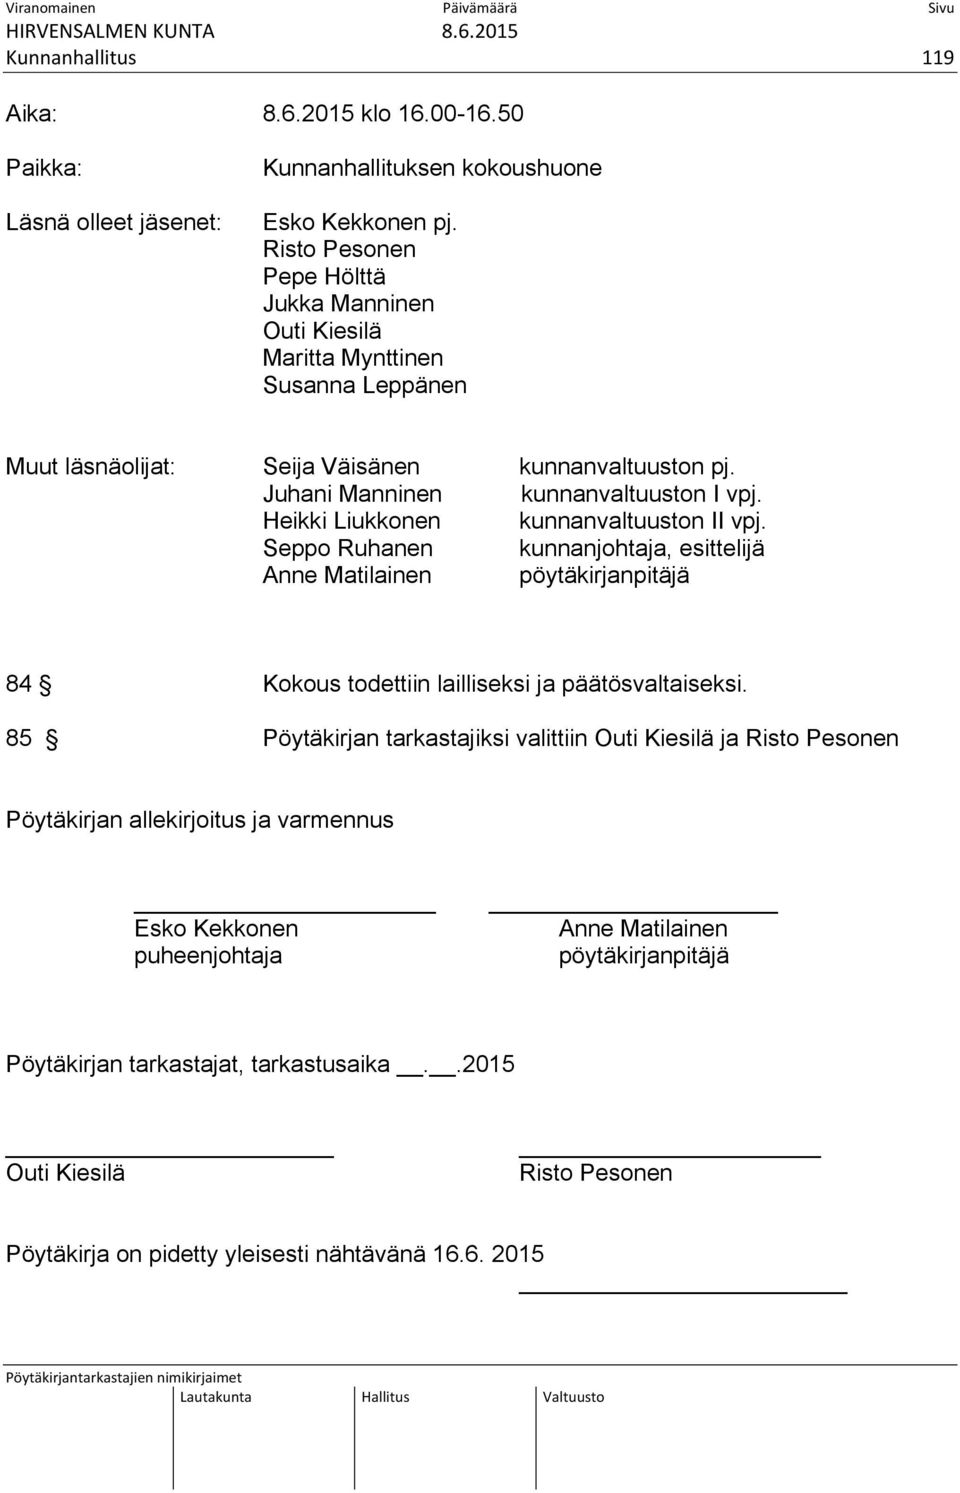 Heikki Liukkonen kunnanvaltuuston II vpj. Seppo Ruhanen kunnanjohtaja, esittelijä Anne Matilainen pöytäkirjanpitäjä 84 Kokous todettiin lailliseksi ja päätösvaltaiseksi.